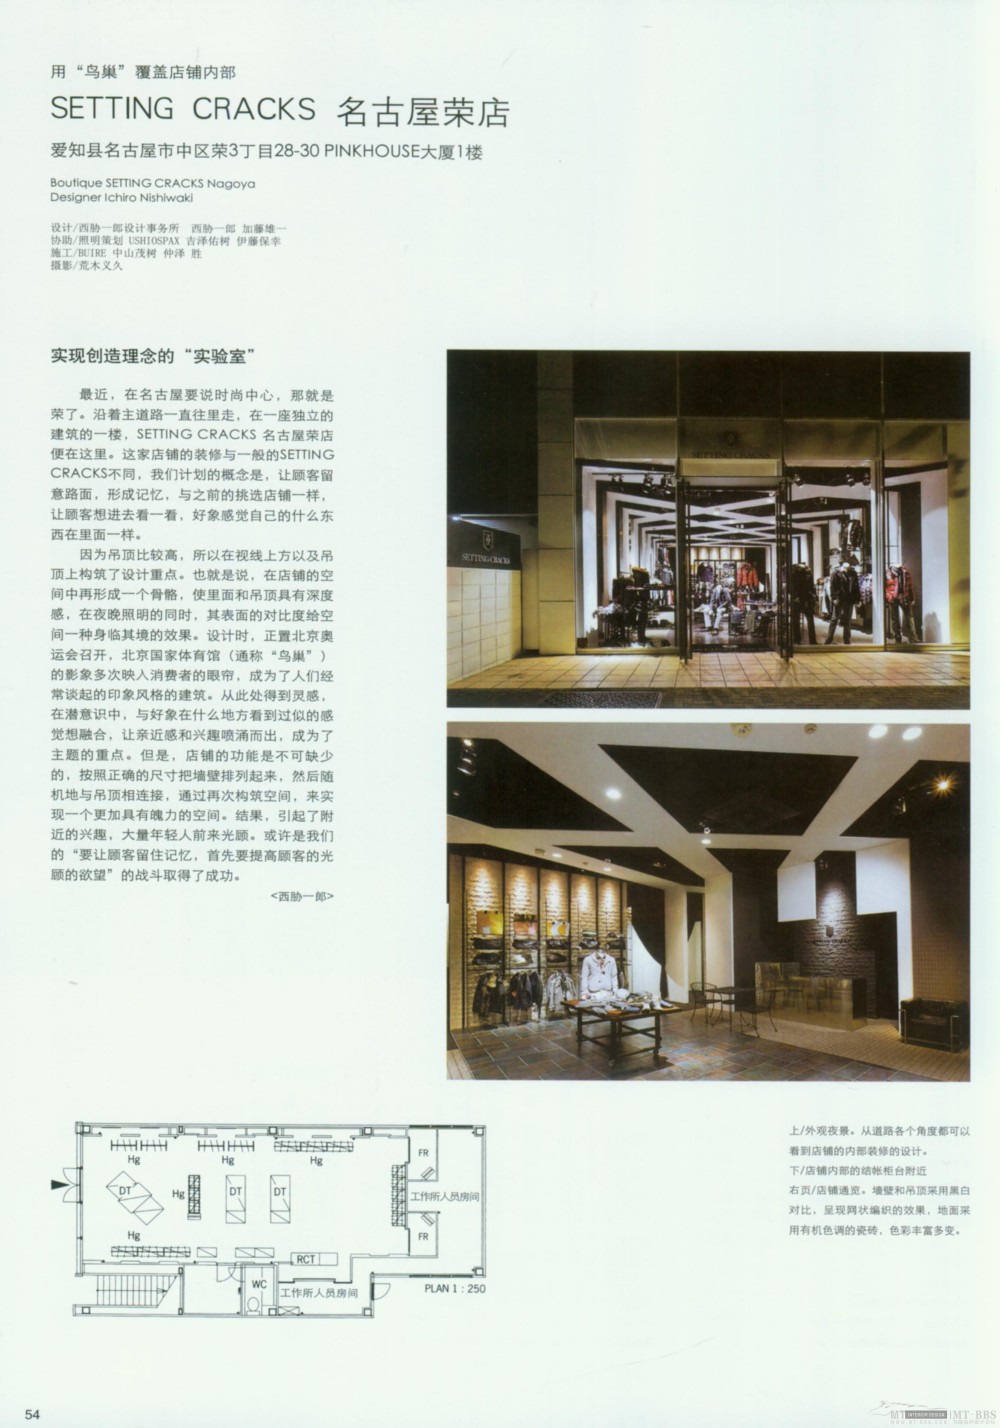 2010亚太商店设计年鉴 A部分2_Zqc052.jpg